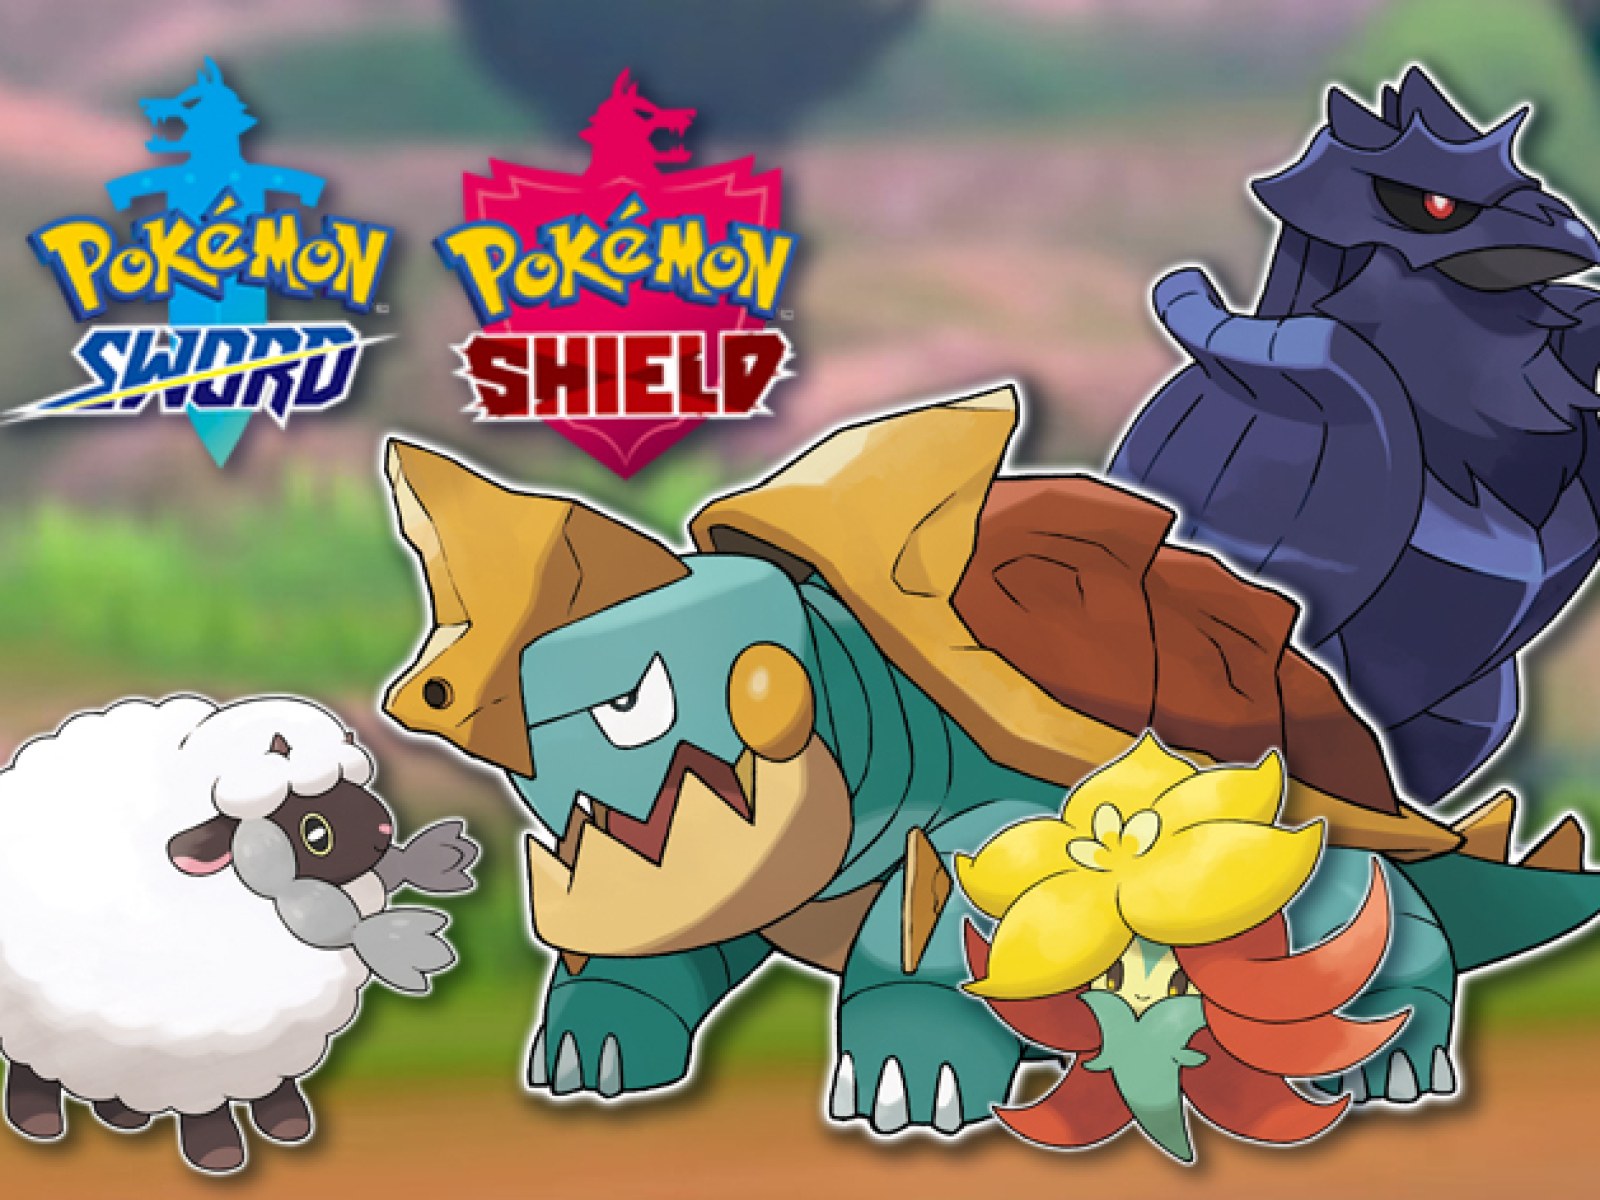 Pokémon Sword & Shield - New Pokémon